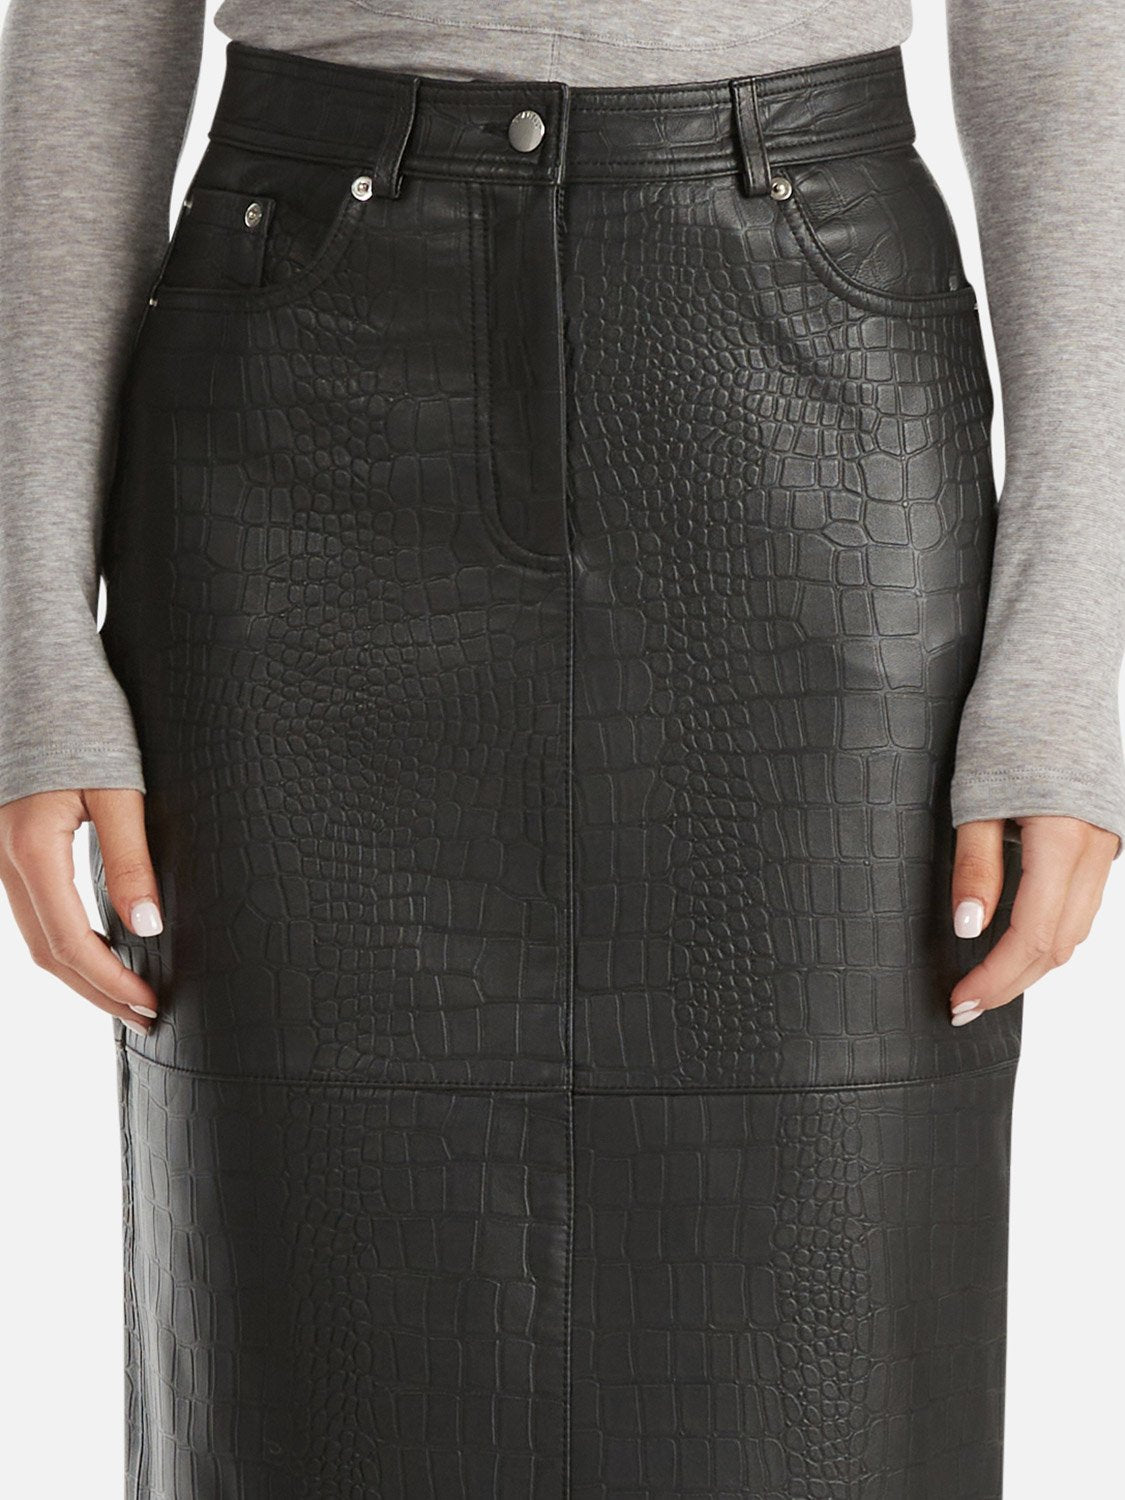 Eden Textured Leather Midi Skirt